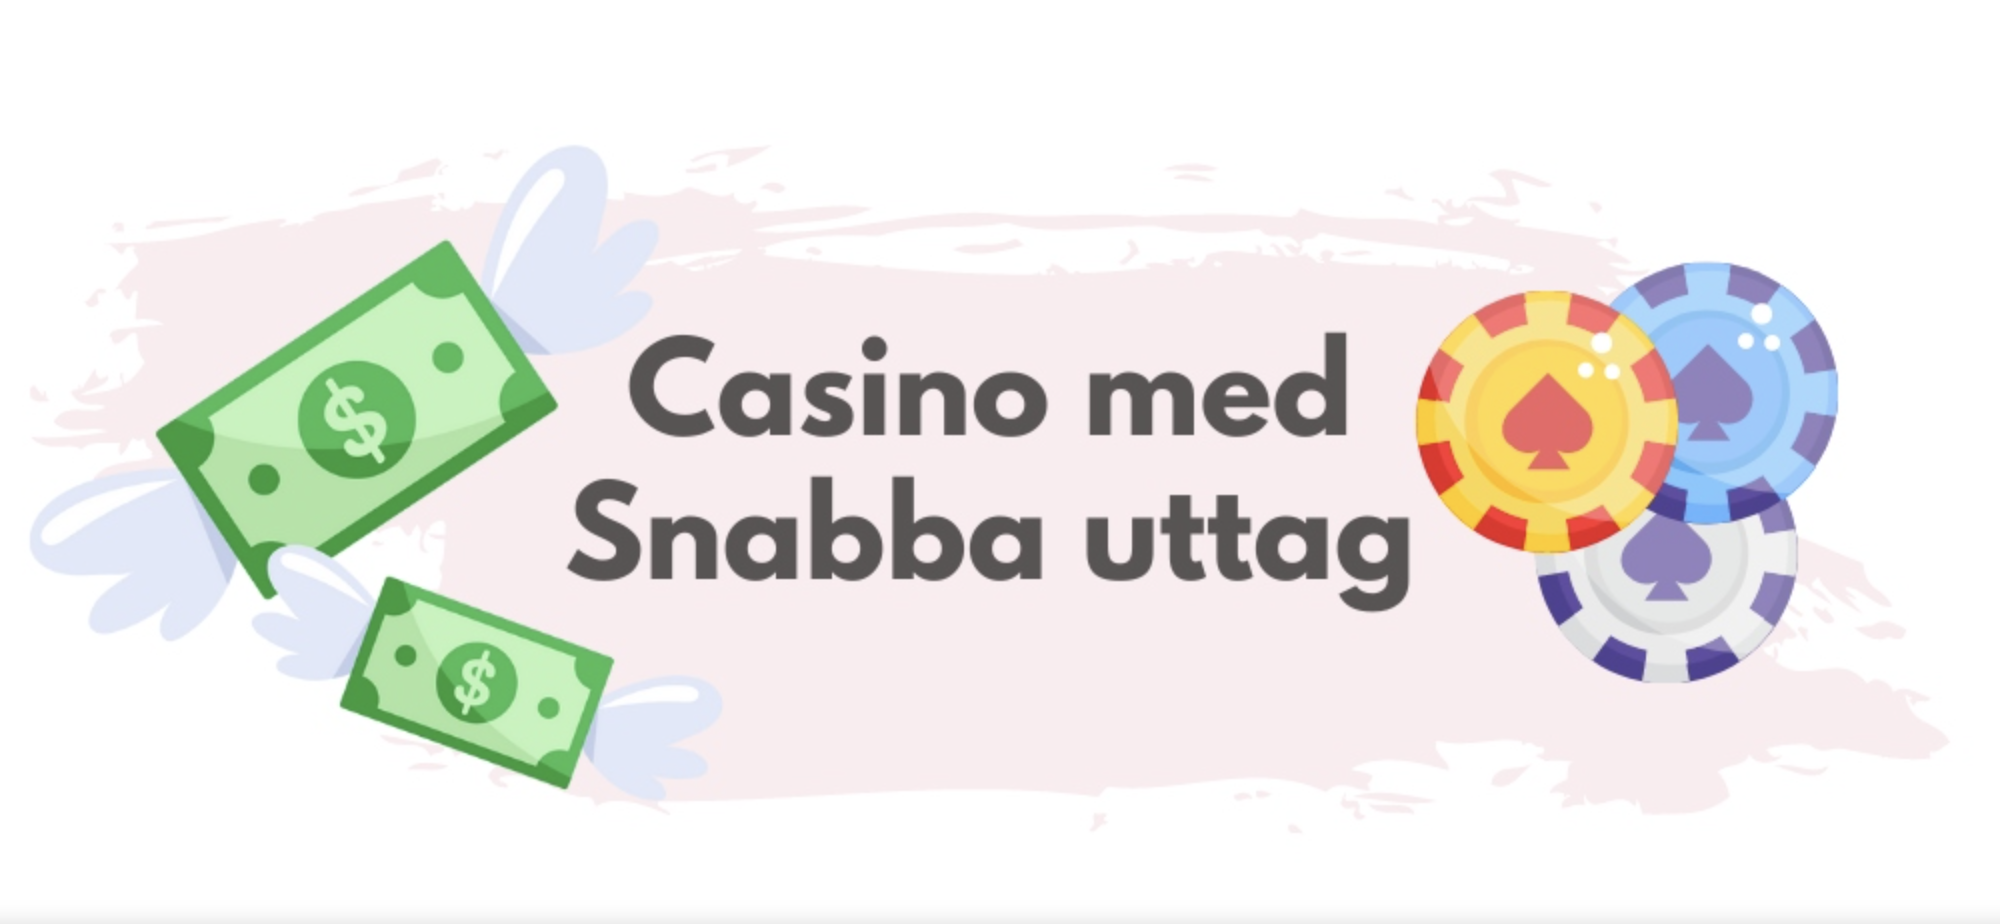 vilket online casino har den snabbaste uttagstiden_1